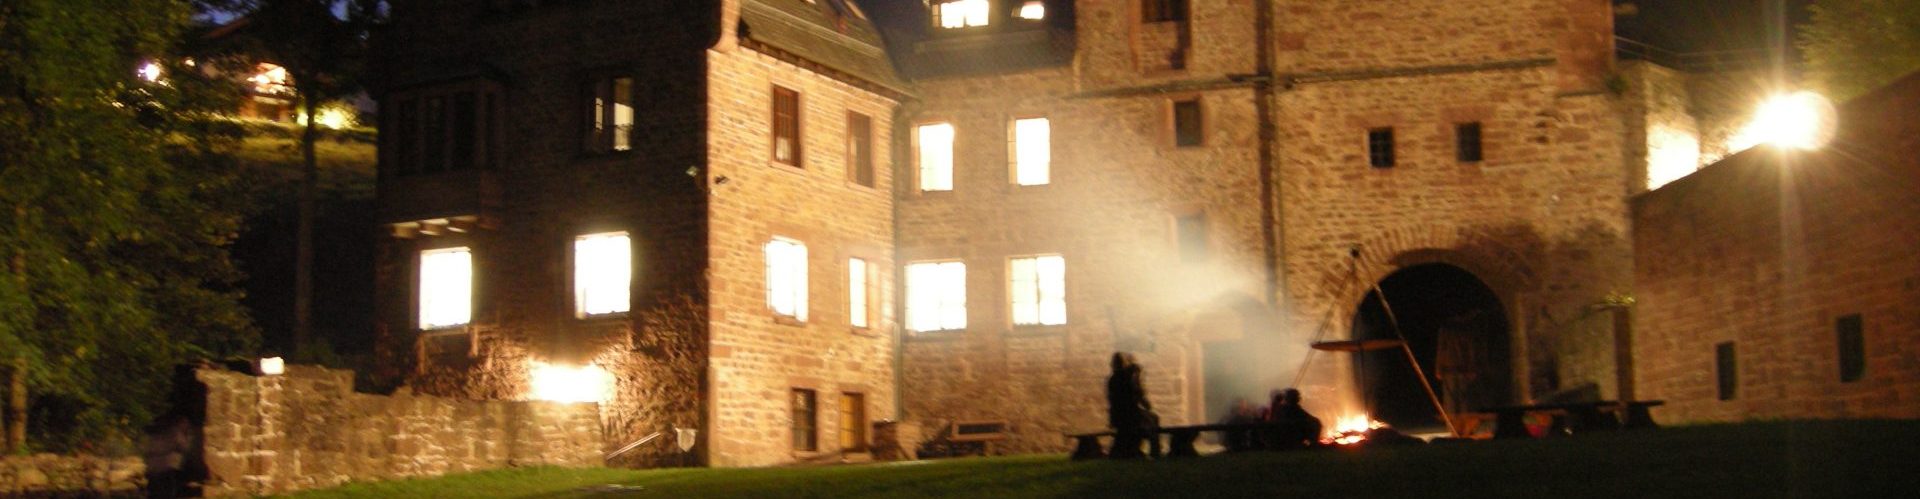 21.-23.10.2016 Jungscharfreizeit auf der Burg Steinegg